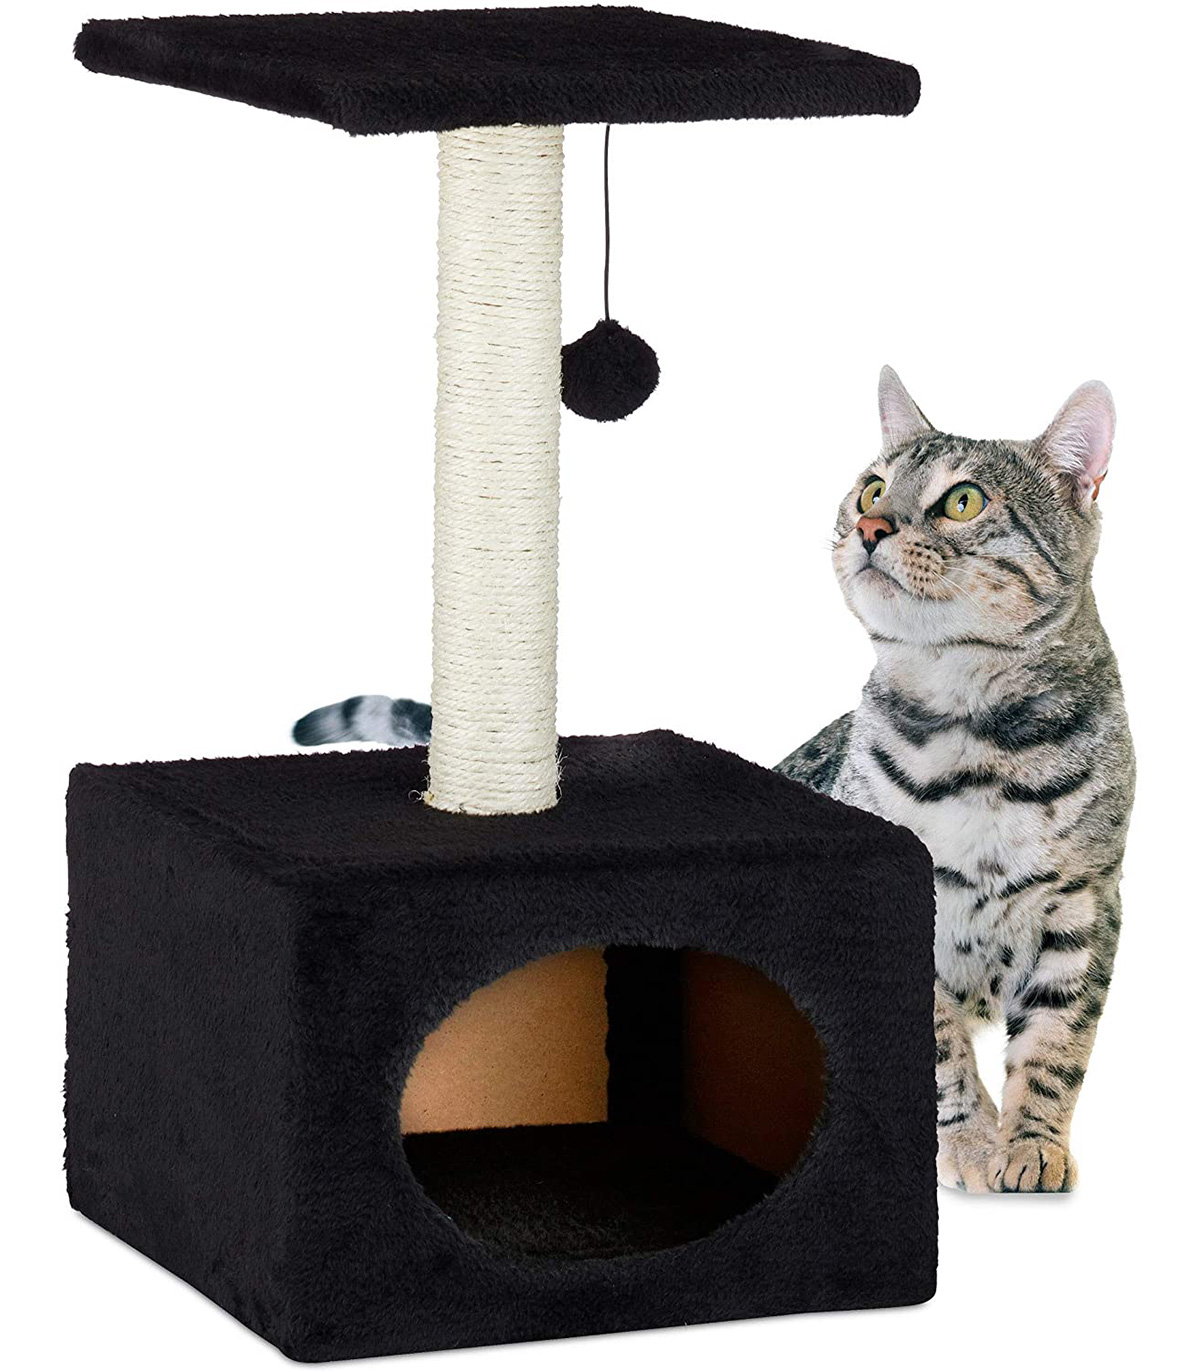 Stalp de zgariat pentru pisici, cu minge de joc si capac de plus, Negru, 31 x 31 x 56 cm Ansambluri